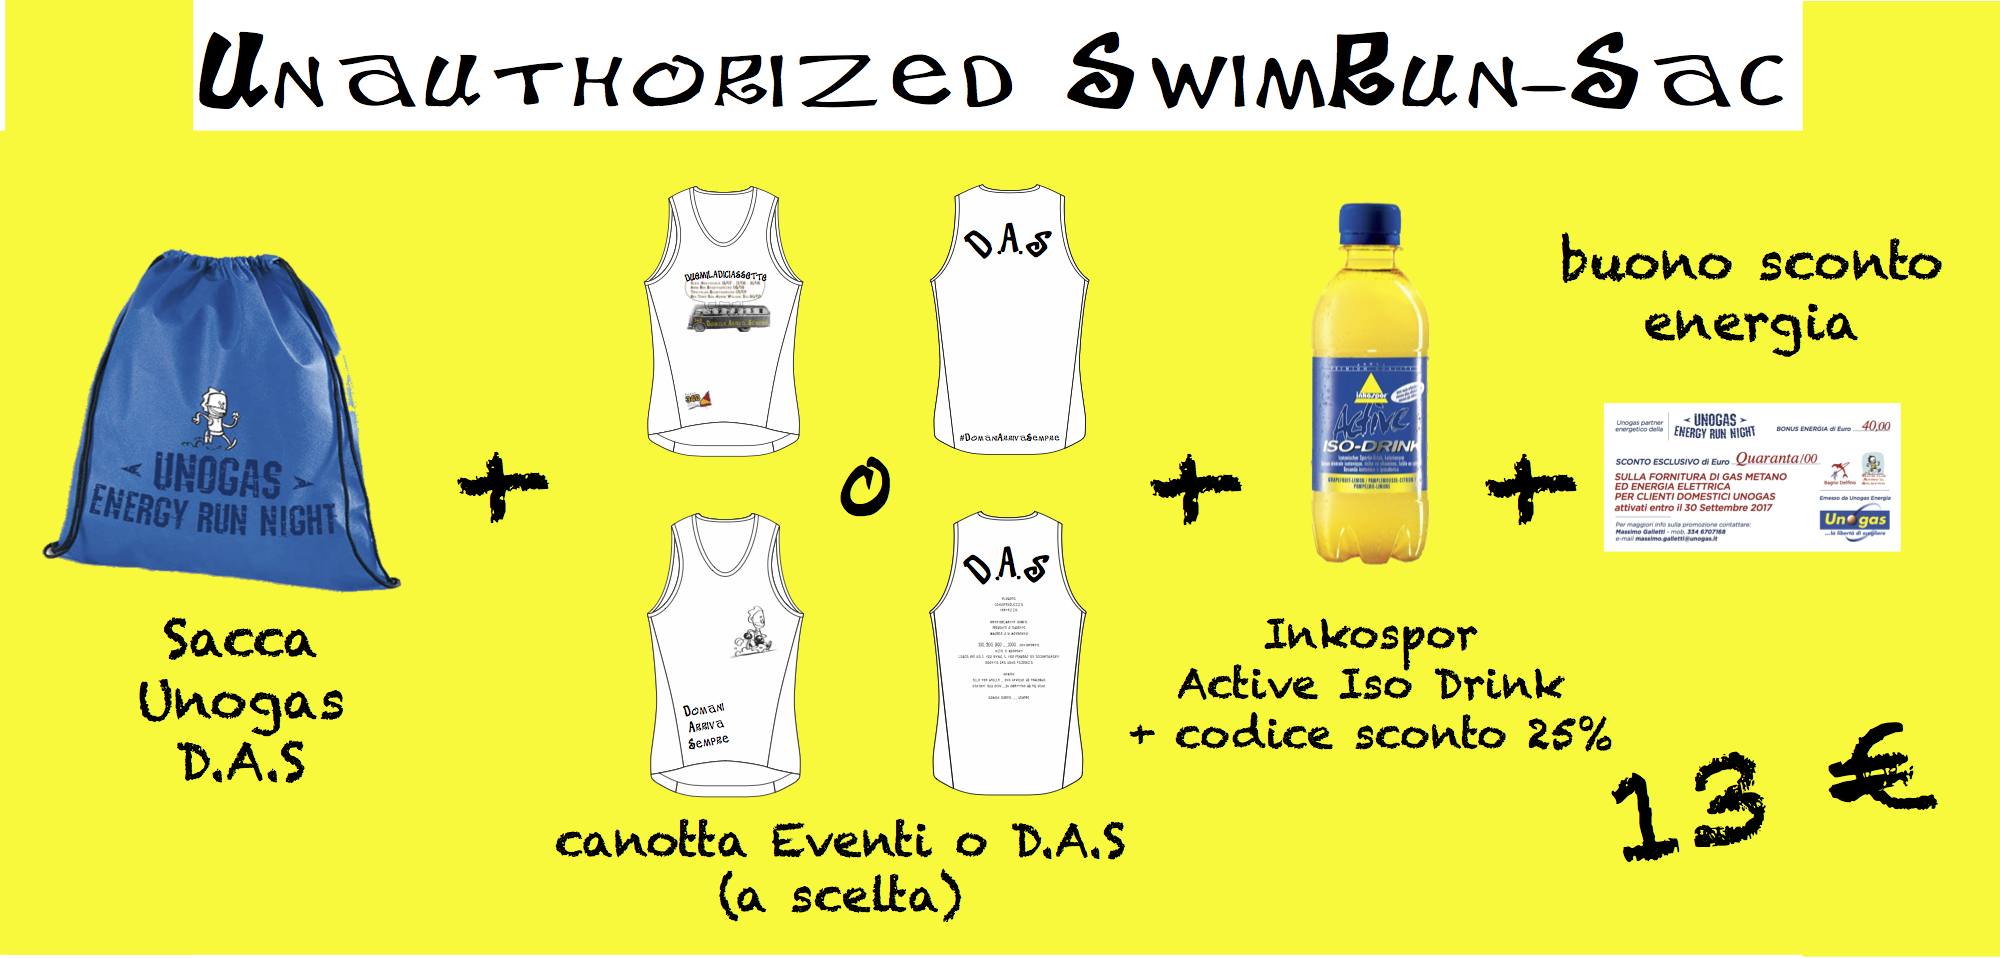 unauthorized swim run sac